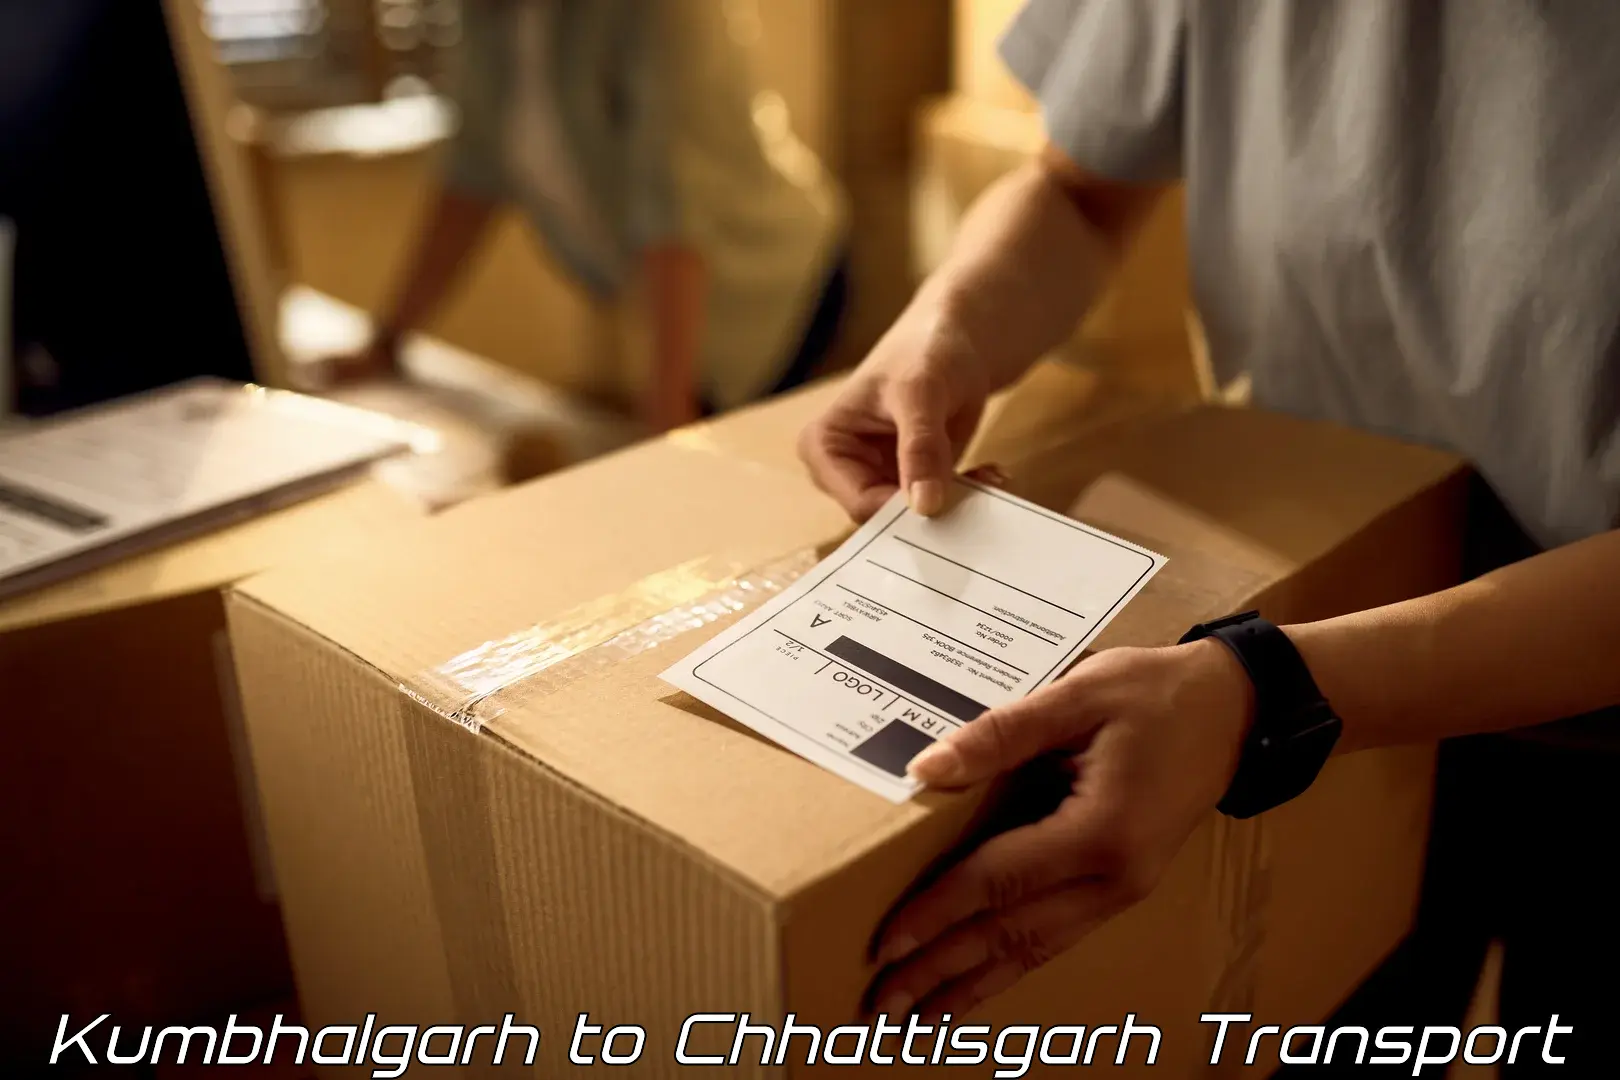 Air freight transport services Kumbhalgarh to Raigarh Chhattisgarh